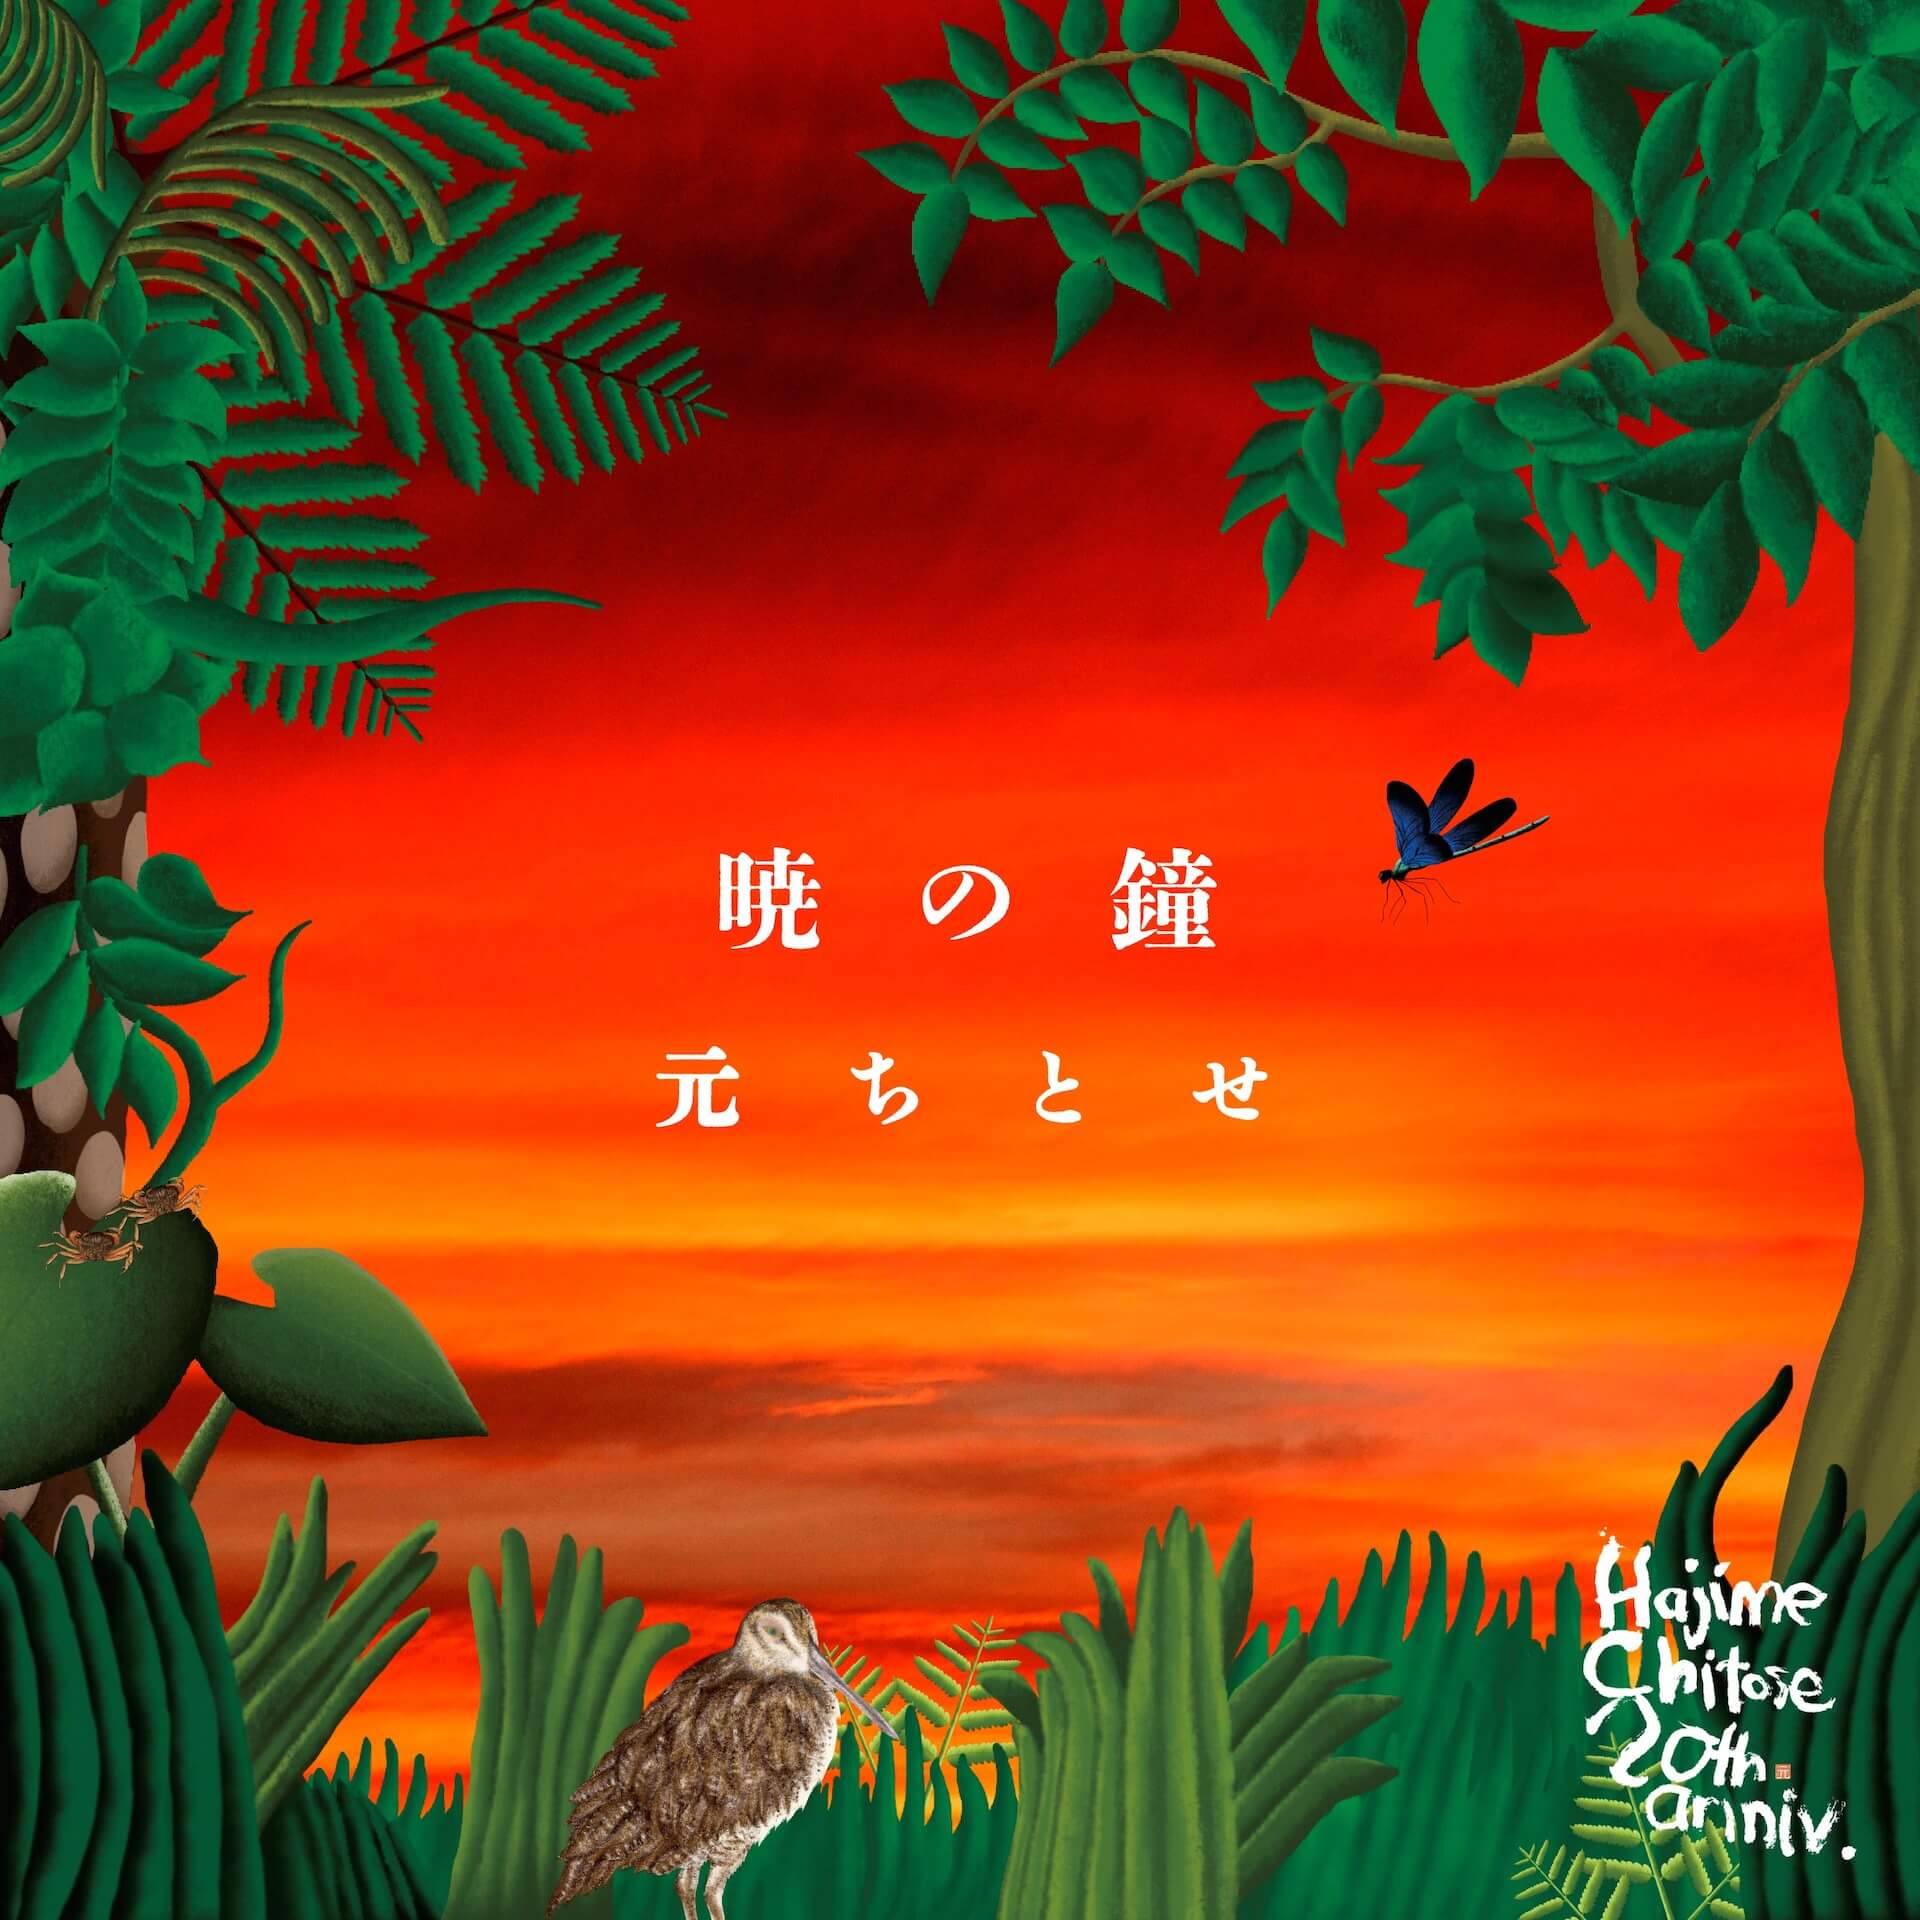 元ちとせ、折坂悠太プロデュース曲「暁の鐘」をリリース｜MVはVIDEOTAPEMUSIC music220609-hajimechitose-1